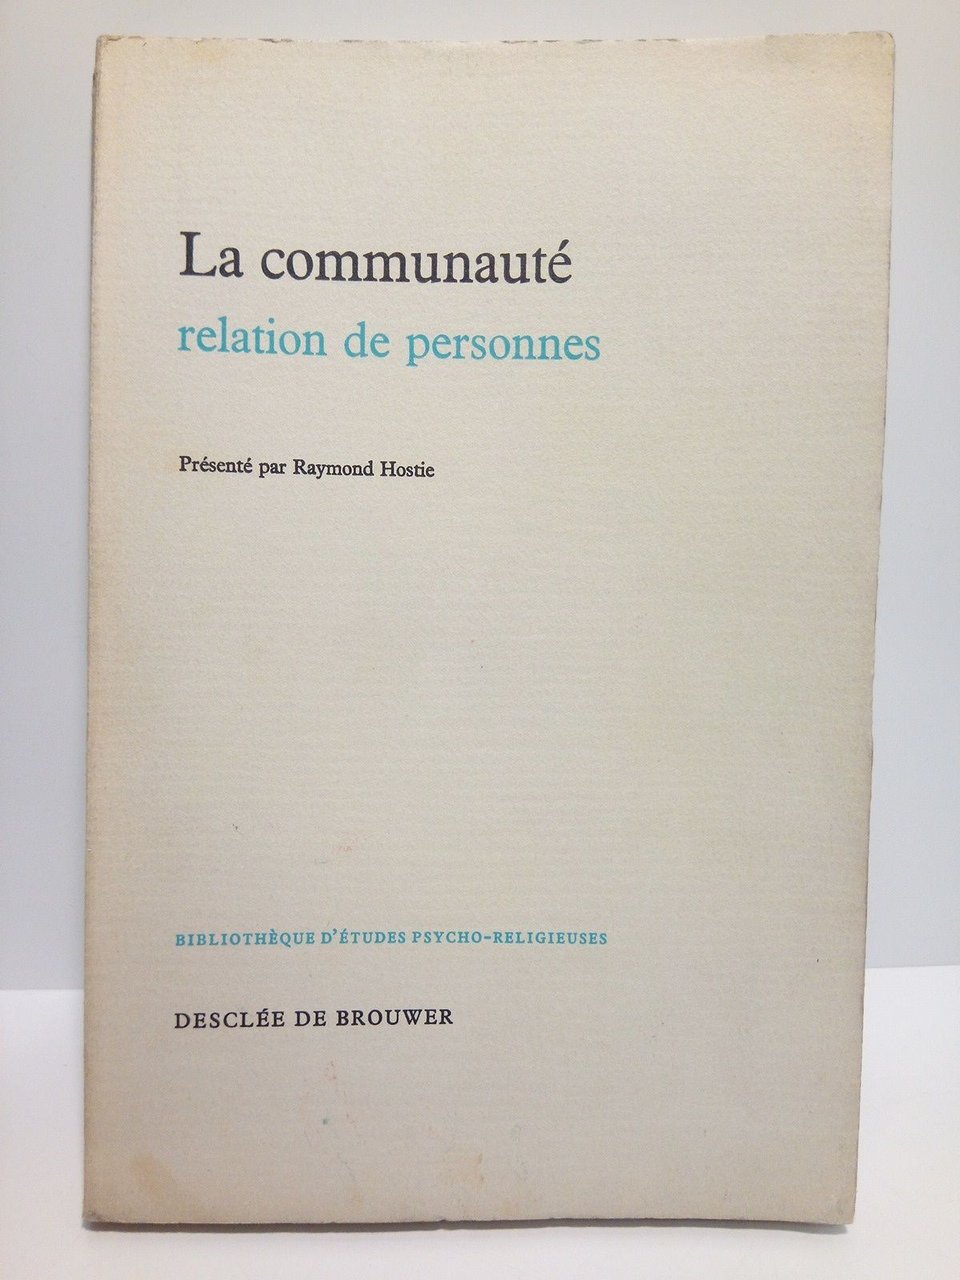 La communauté, relation de personnes / Présenté par Raymond Hostie